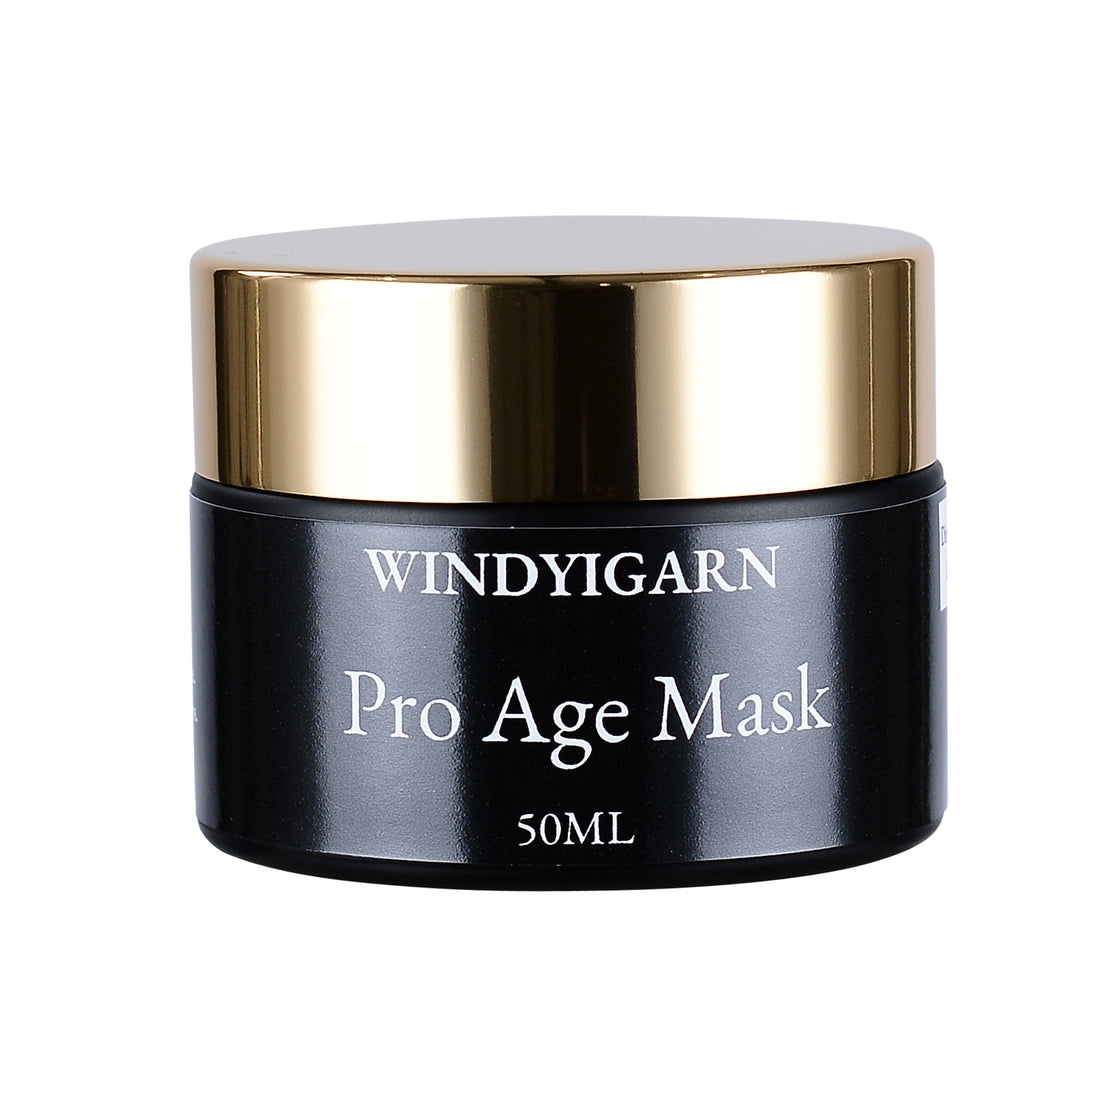 Pro Age Mask